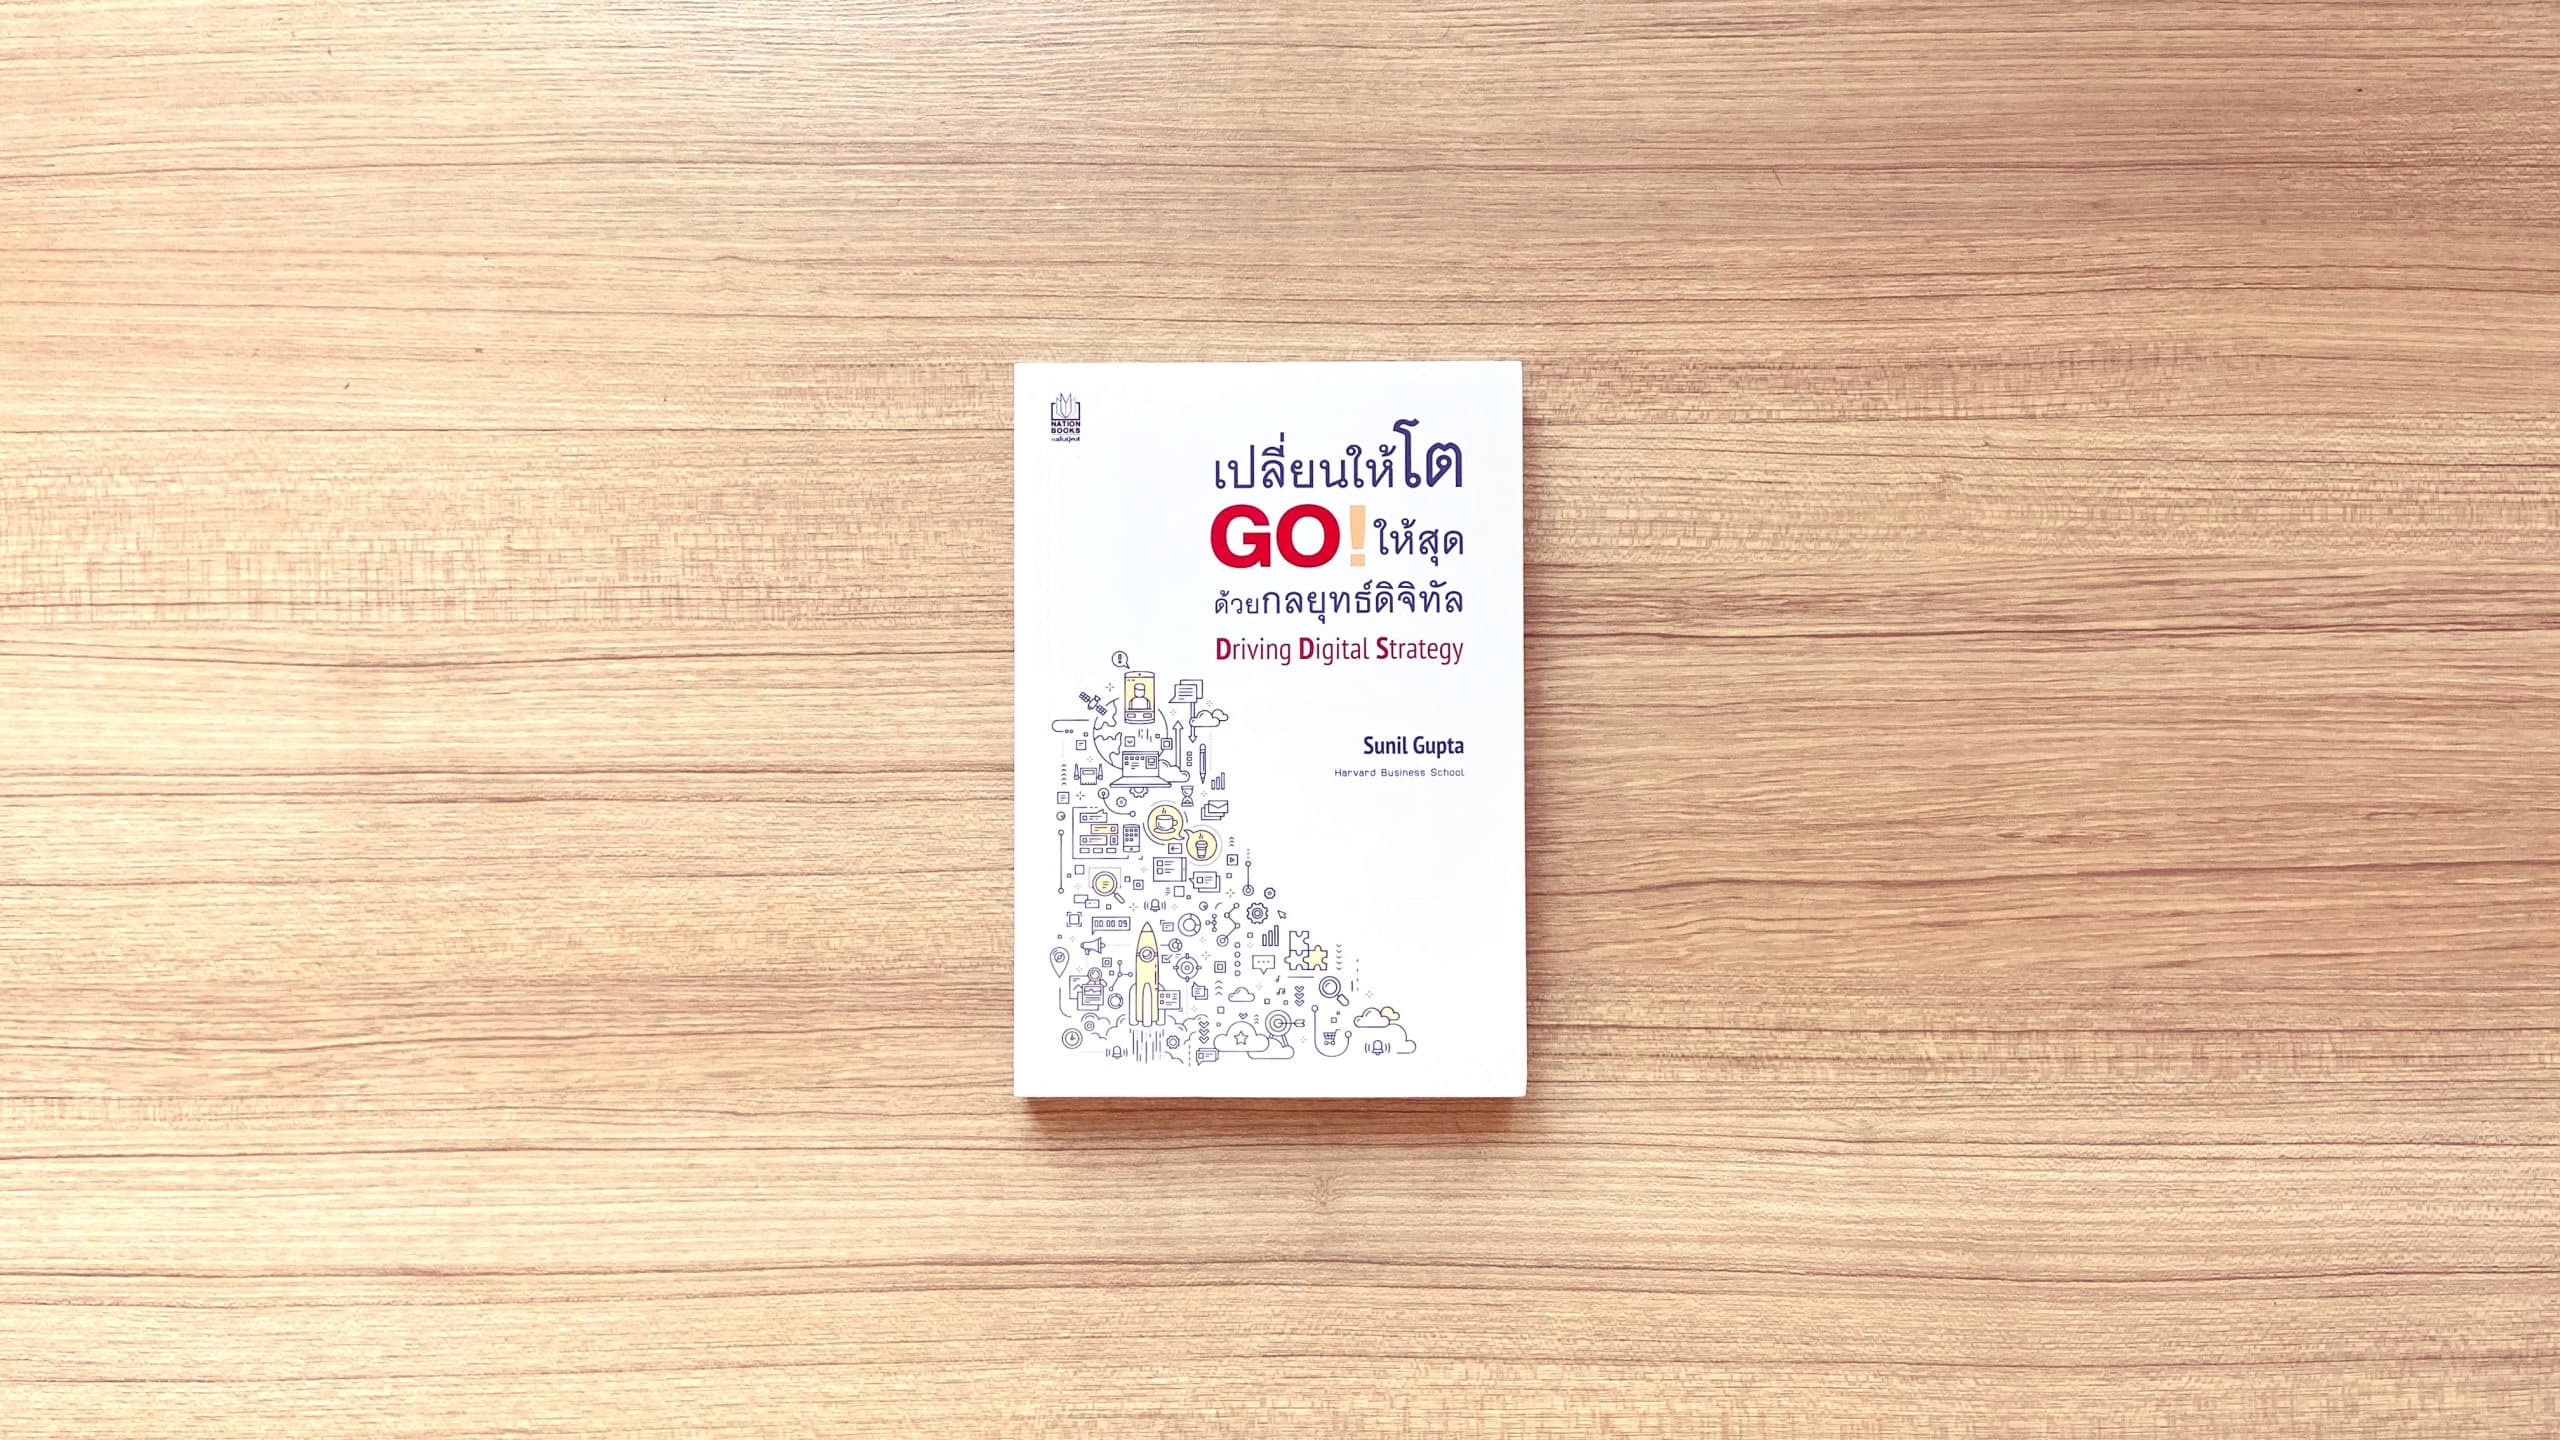 สรุปหนังสือ Driving Digital Strategy เปลี่ยนให้โต Go ให้สุด ด้วยกลยุทธ์ดิจิทัล